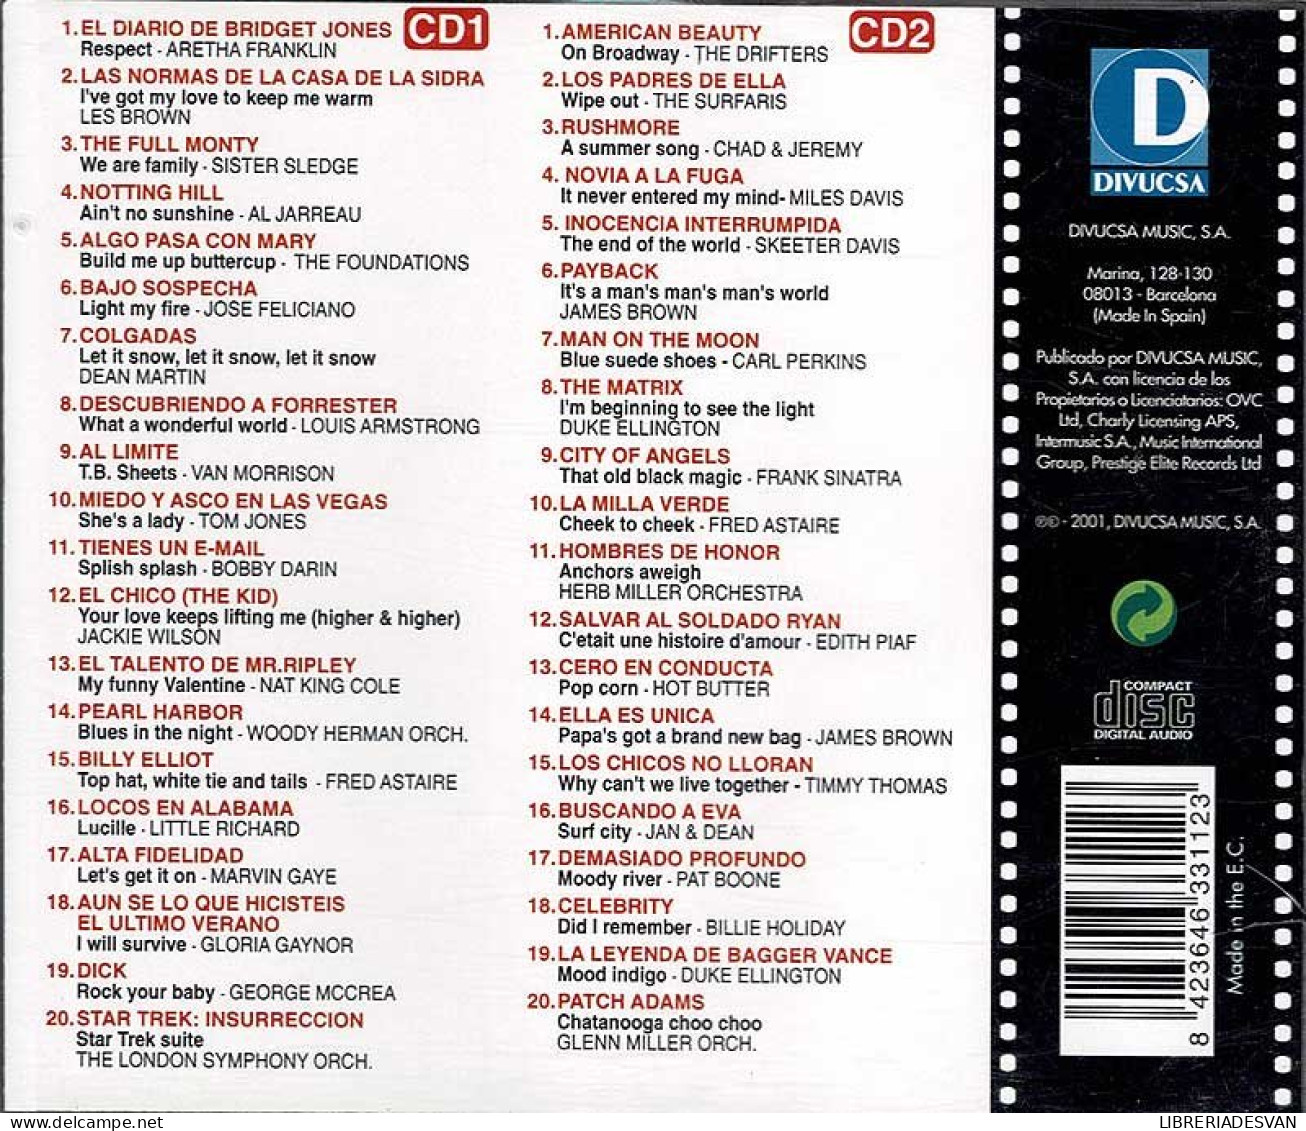 Los Mejores Temas Del Cine De Hoy. 2 X CD - Soundtracks, Film Music